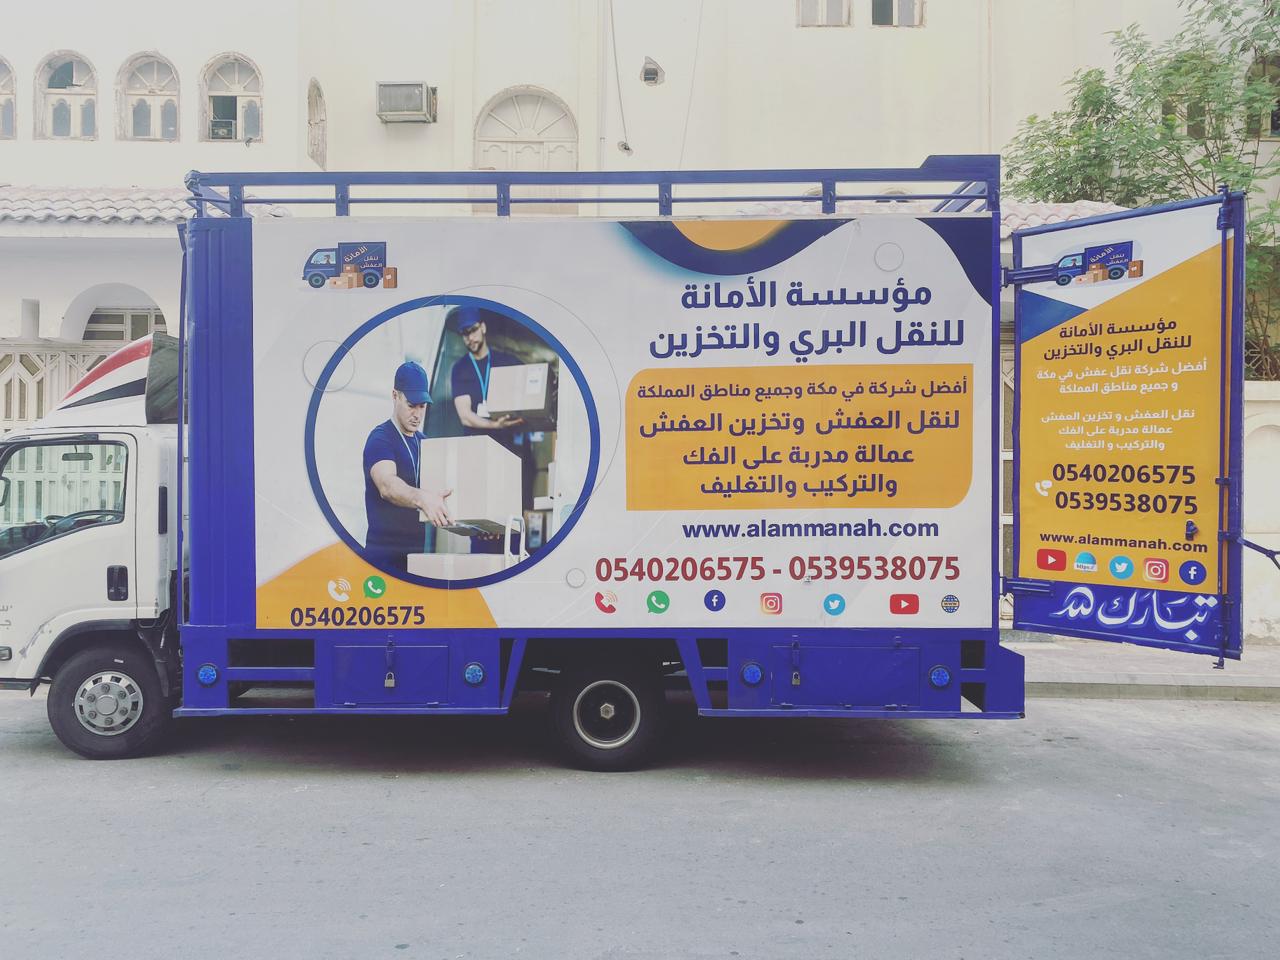 شركة نقل الأثاث في مكة المكرمة والشحن شركة الأمانه في مكة المكرمة من أفضل الشركات التي تقدم خدمات نقل العفش في مكة المكرمة